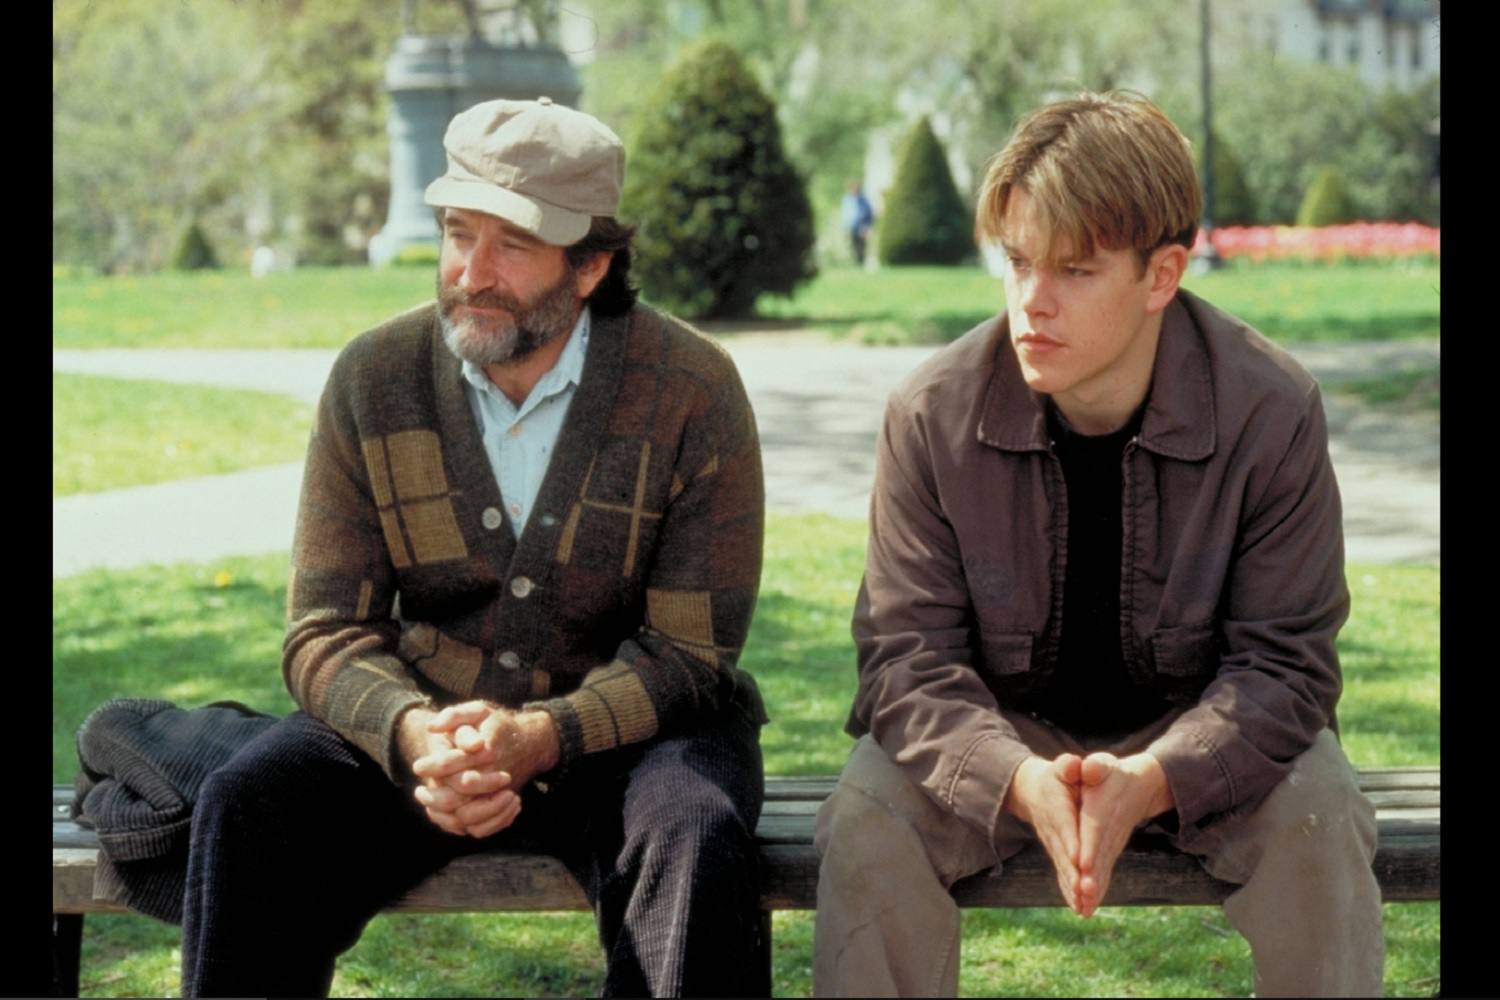 Een screenshot van een scène uit de film Good Will Hunting.  De personages Sean en Will zitten naast elkaar op de bank.